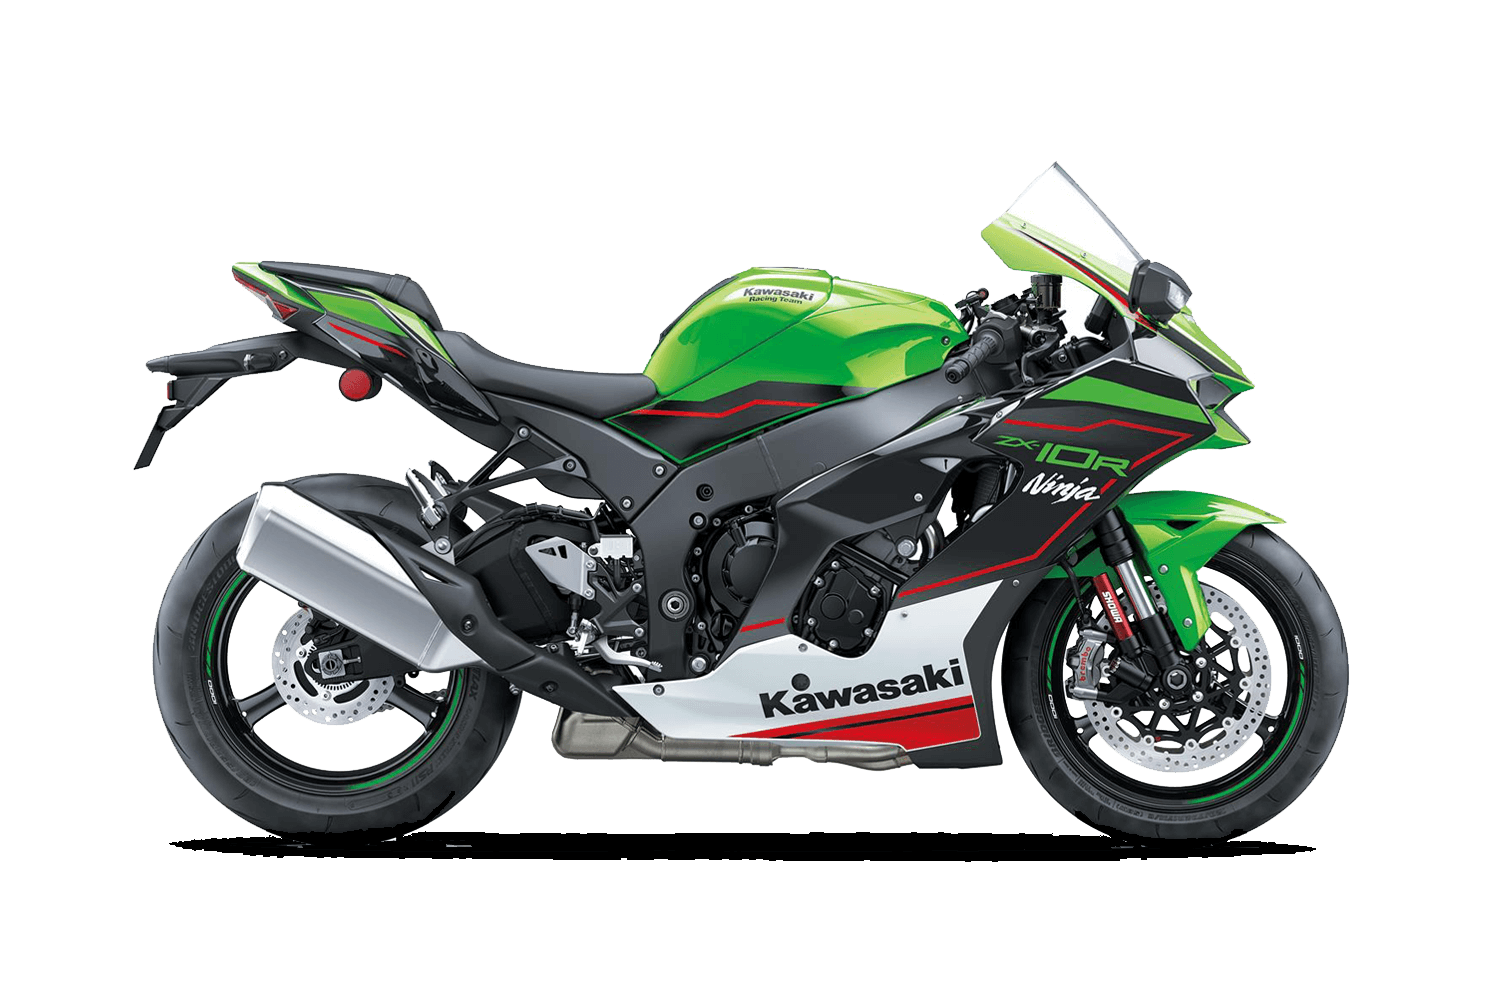 New Kawasaki Motorcycle Models Prices Seastar Superbikes